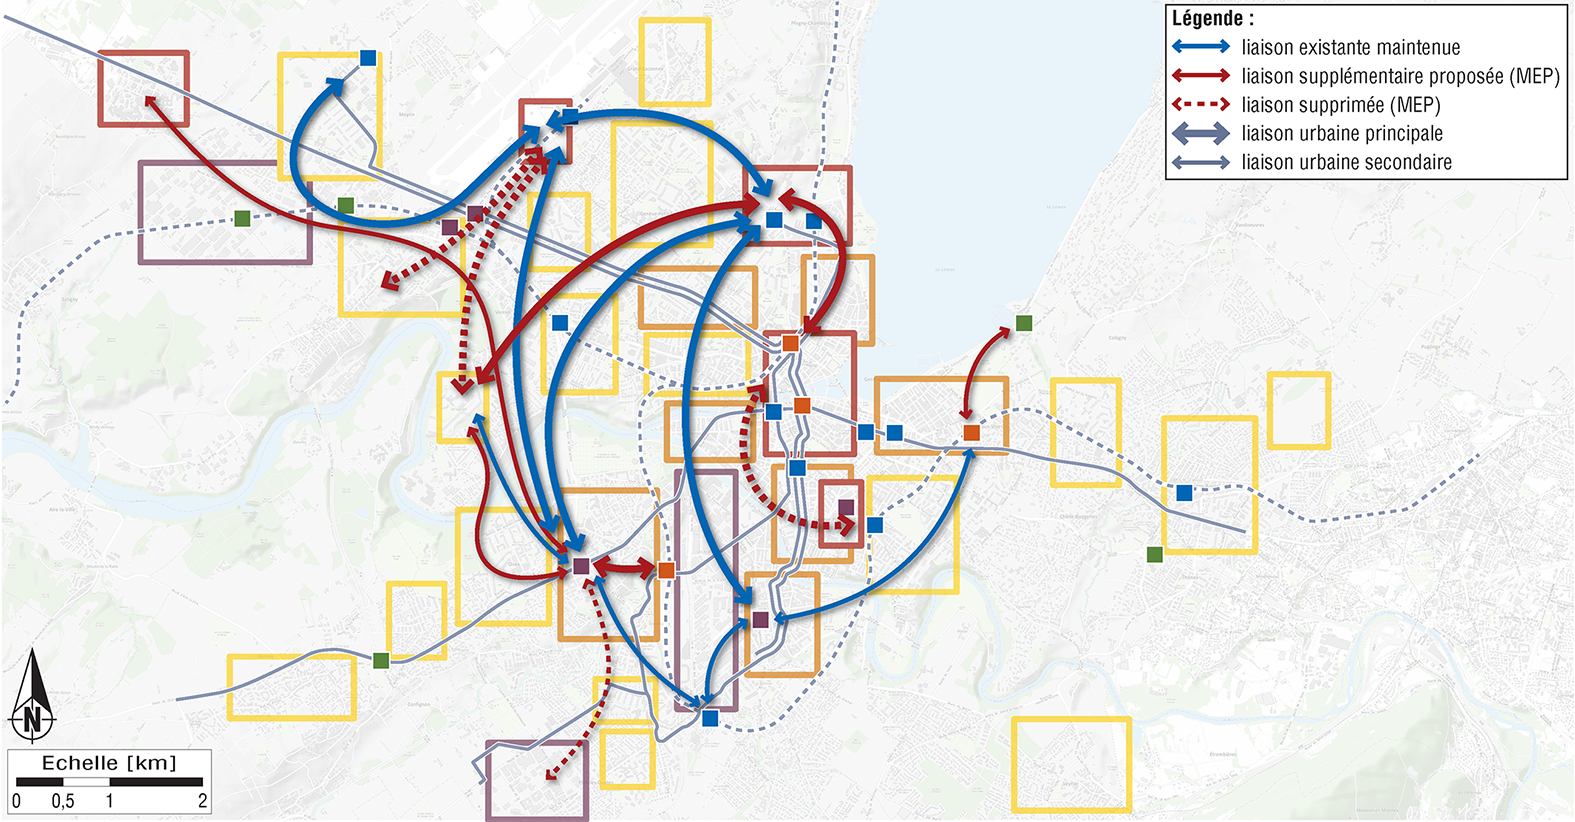 Concept pour les liaisons tangentielles (réseau urbain) – Proposition du MEP